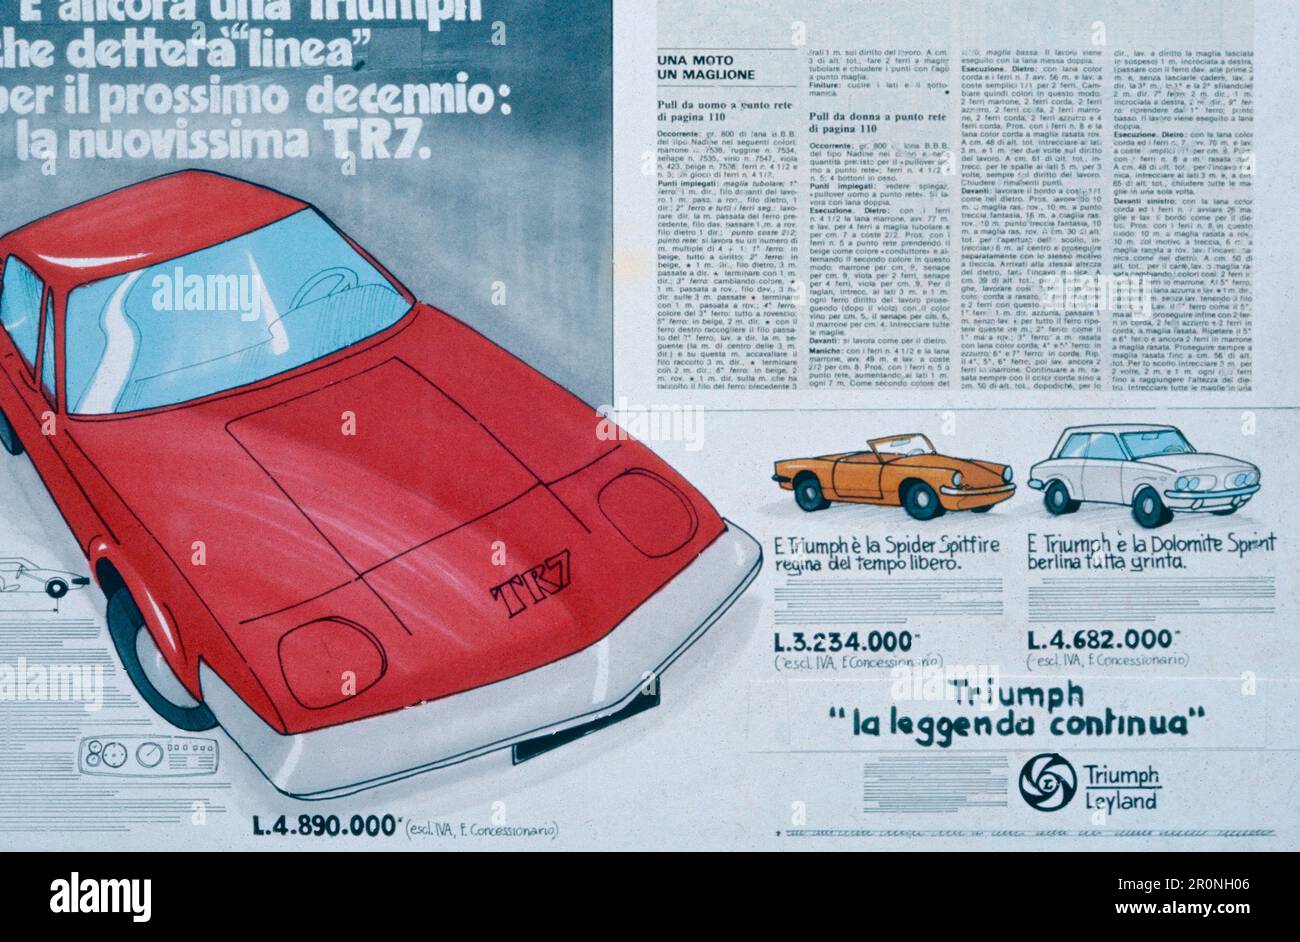 Cartel publicitario del coche Triumph TR7, Italia 1970s Foto de stock